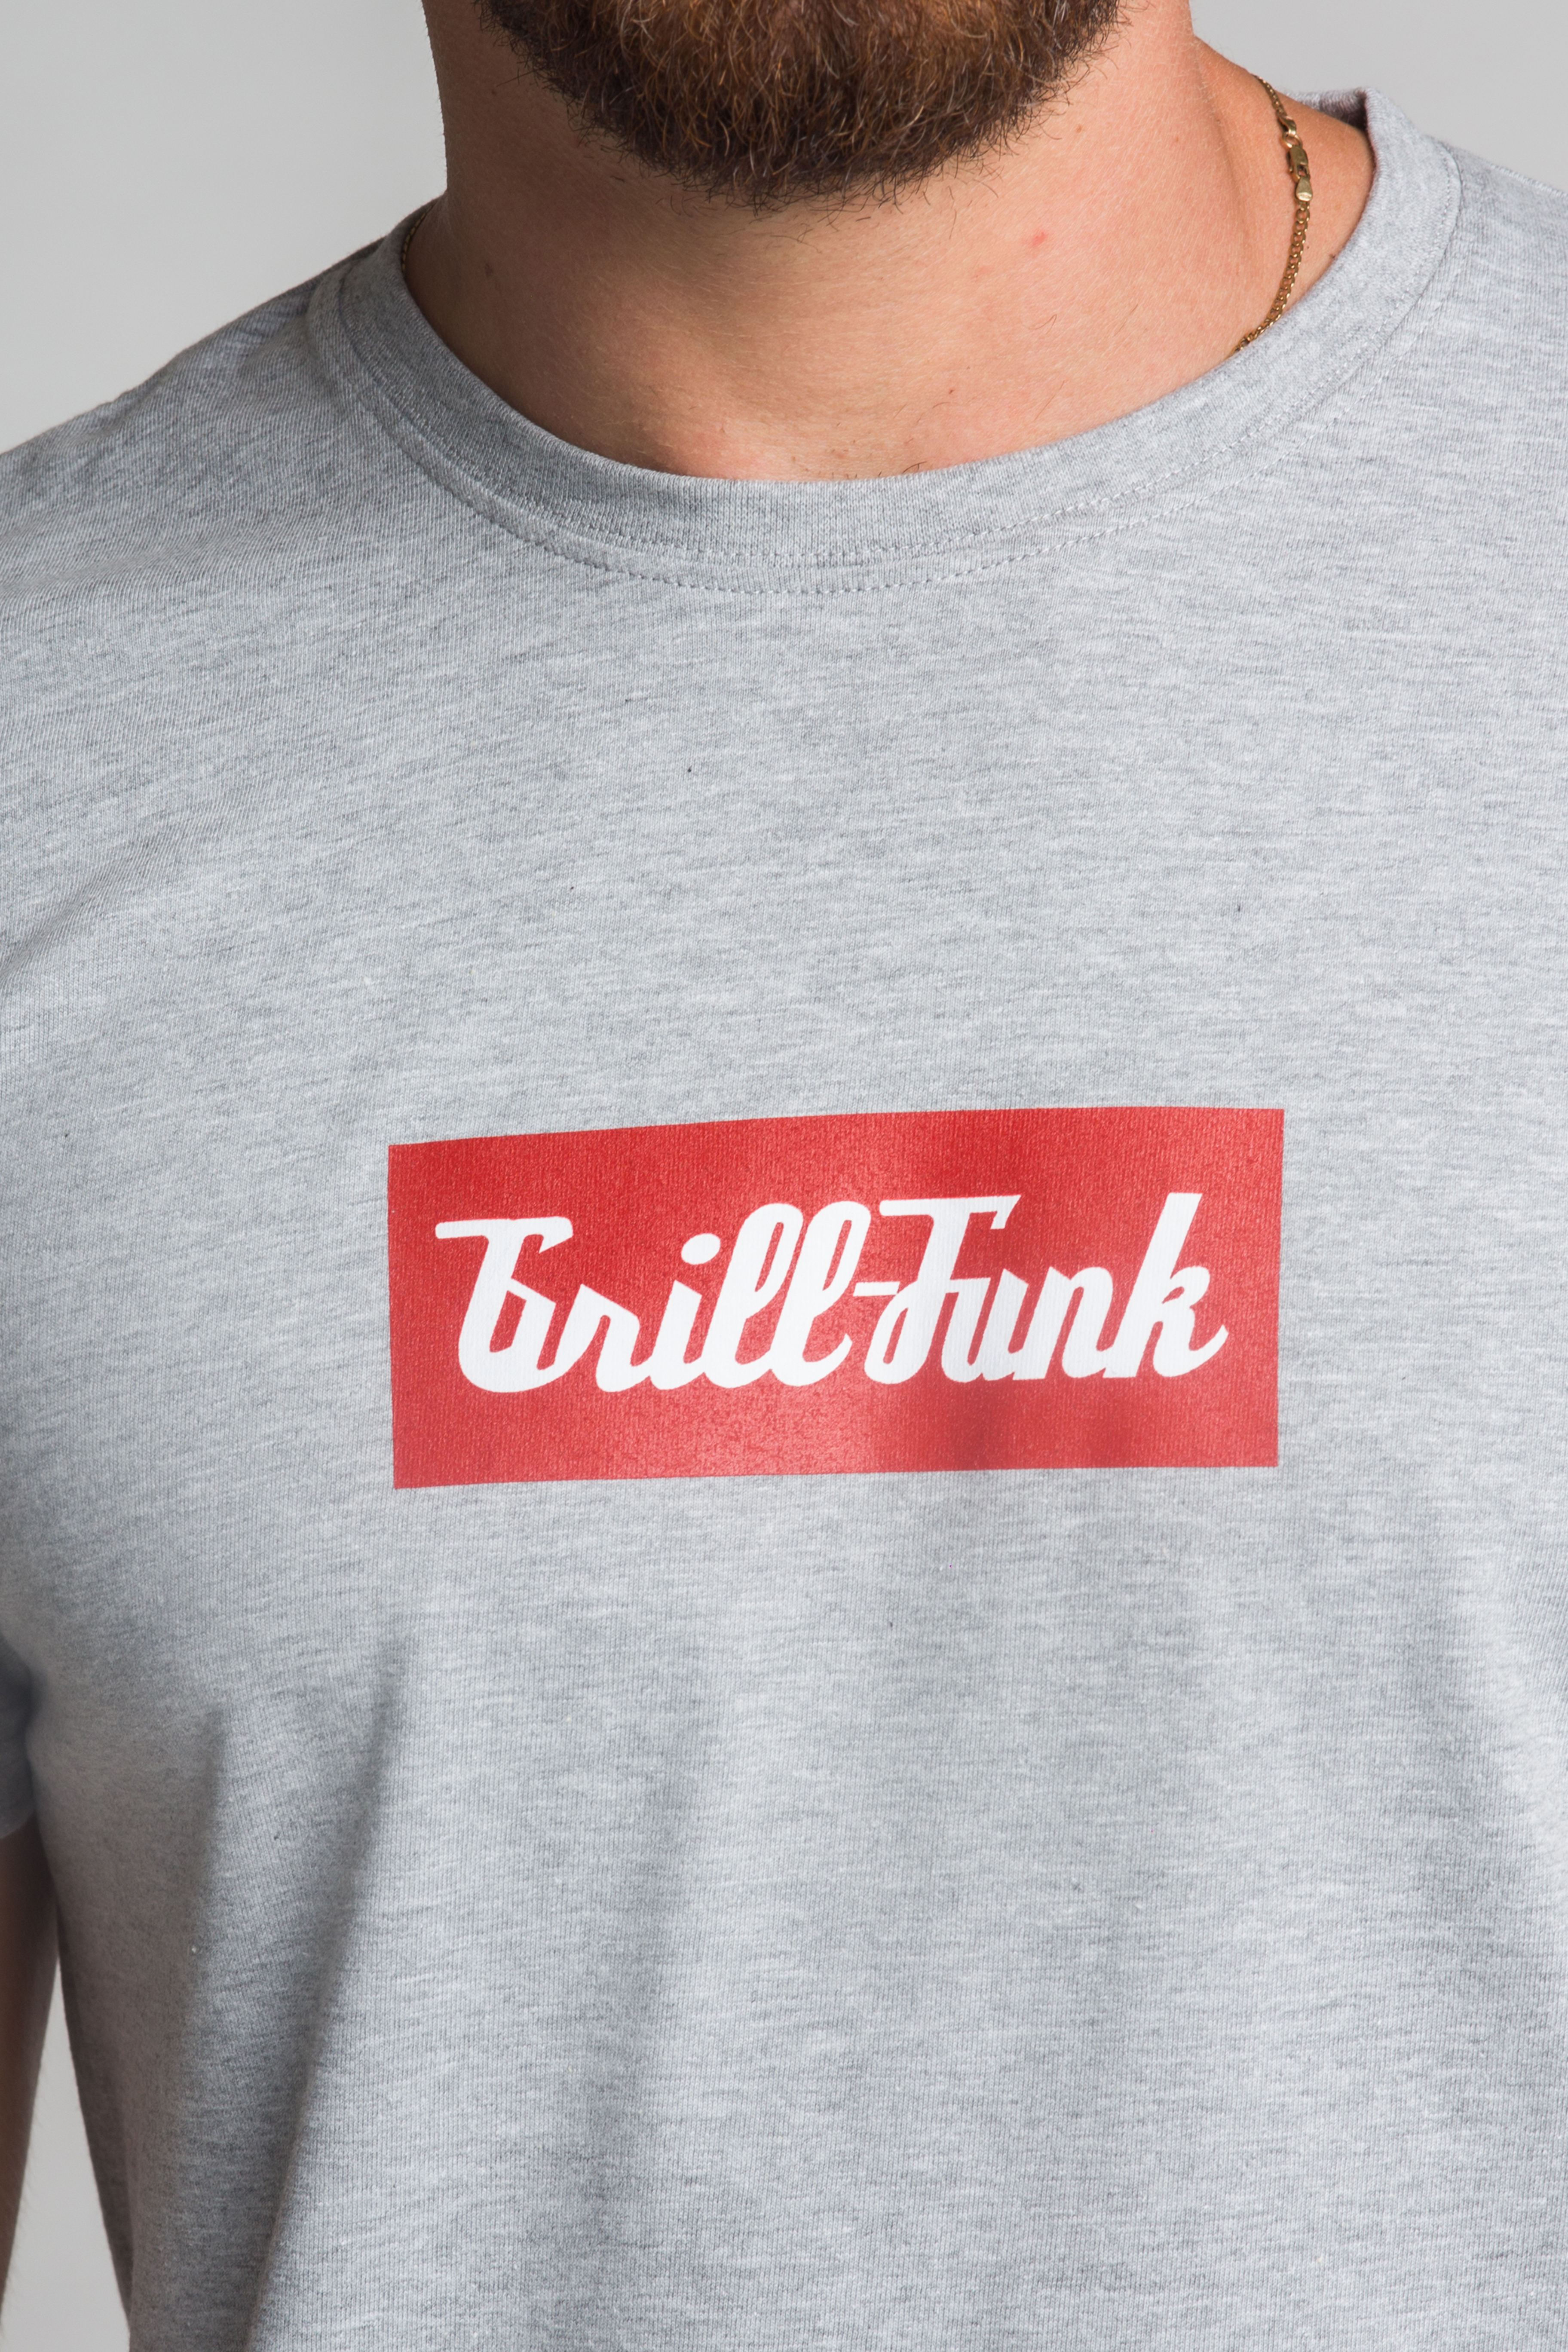 Koszulka męska Grill-Funk Classic Rectangle - szara